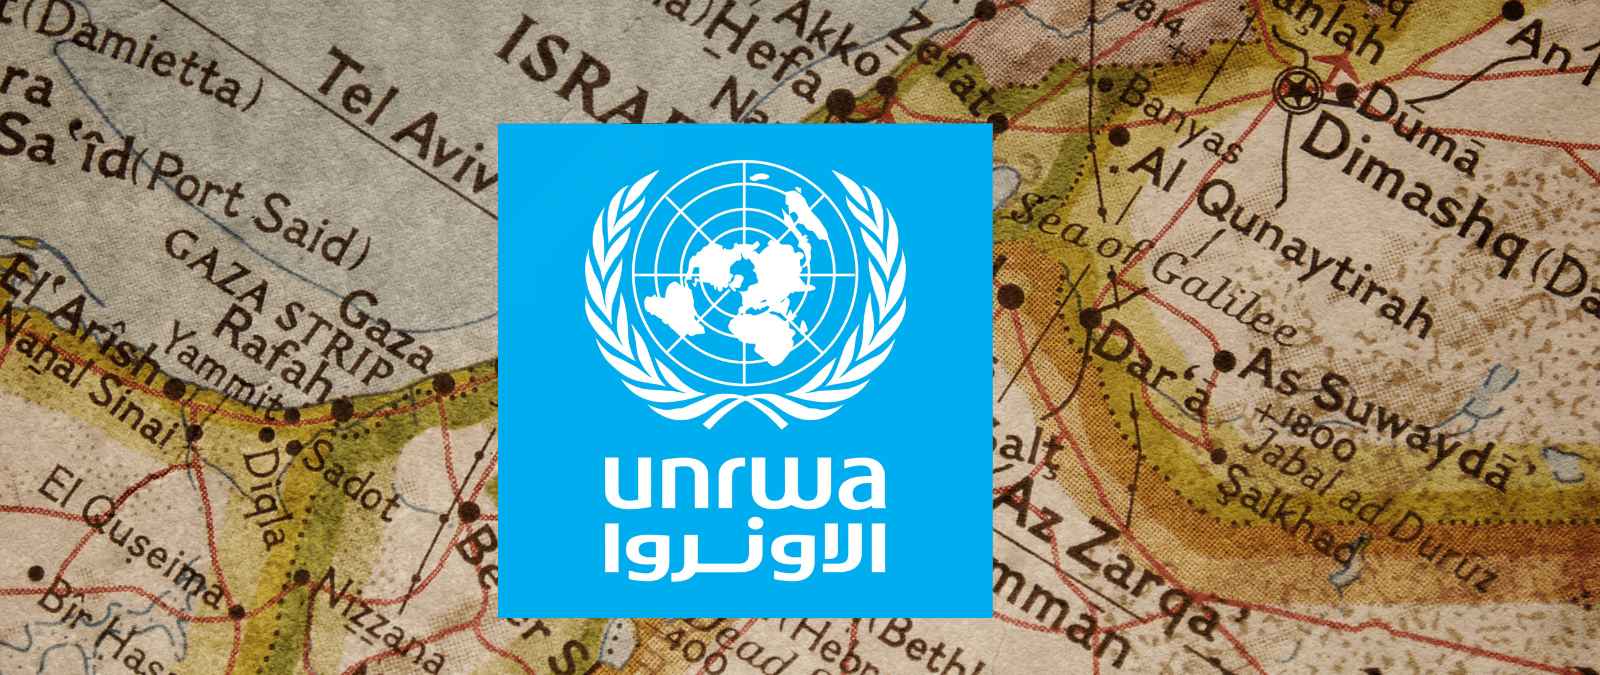 La investigación interna en la agencia de la ONU para los refugiados palestinos y la financiación internacional: preguntas y respuestas